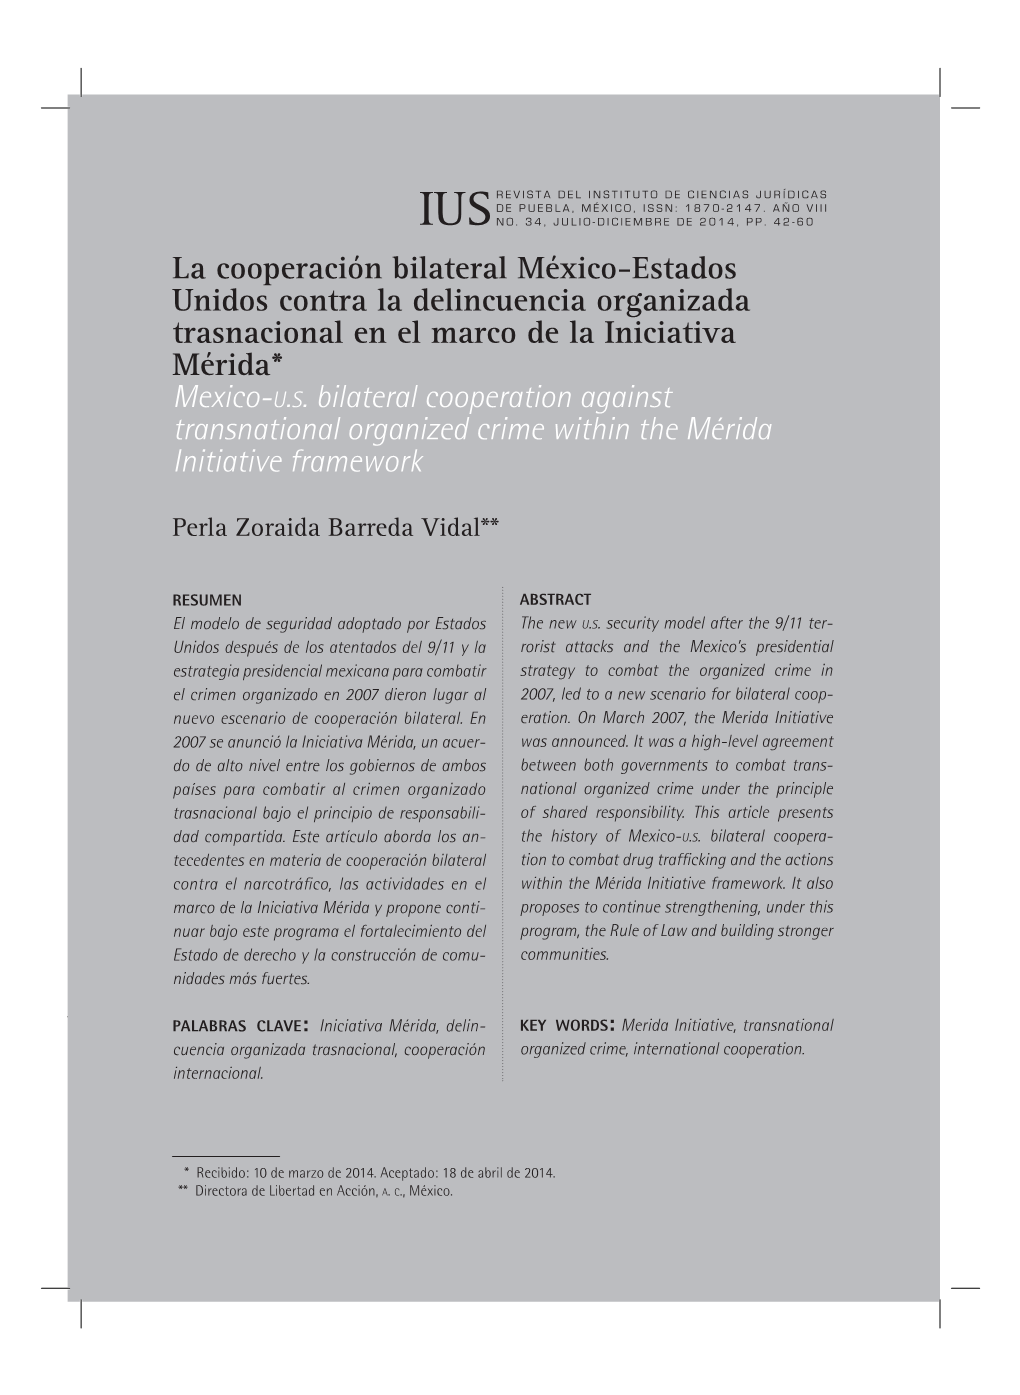 La Cooperación Bilateral México-Estados Unidos Contra La Delincuencia Organizada Trasnacional En El Marco De La Iniciativa Mérida* Mexico-U.S